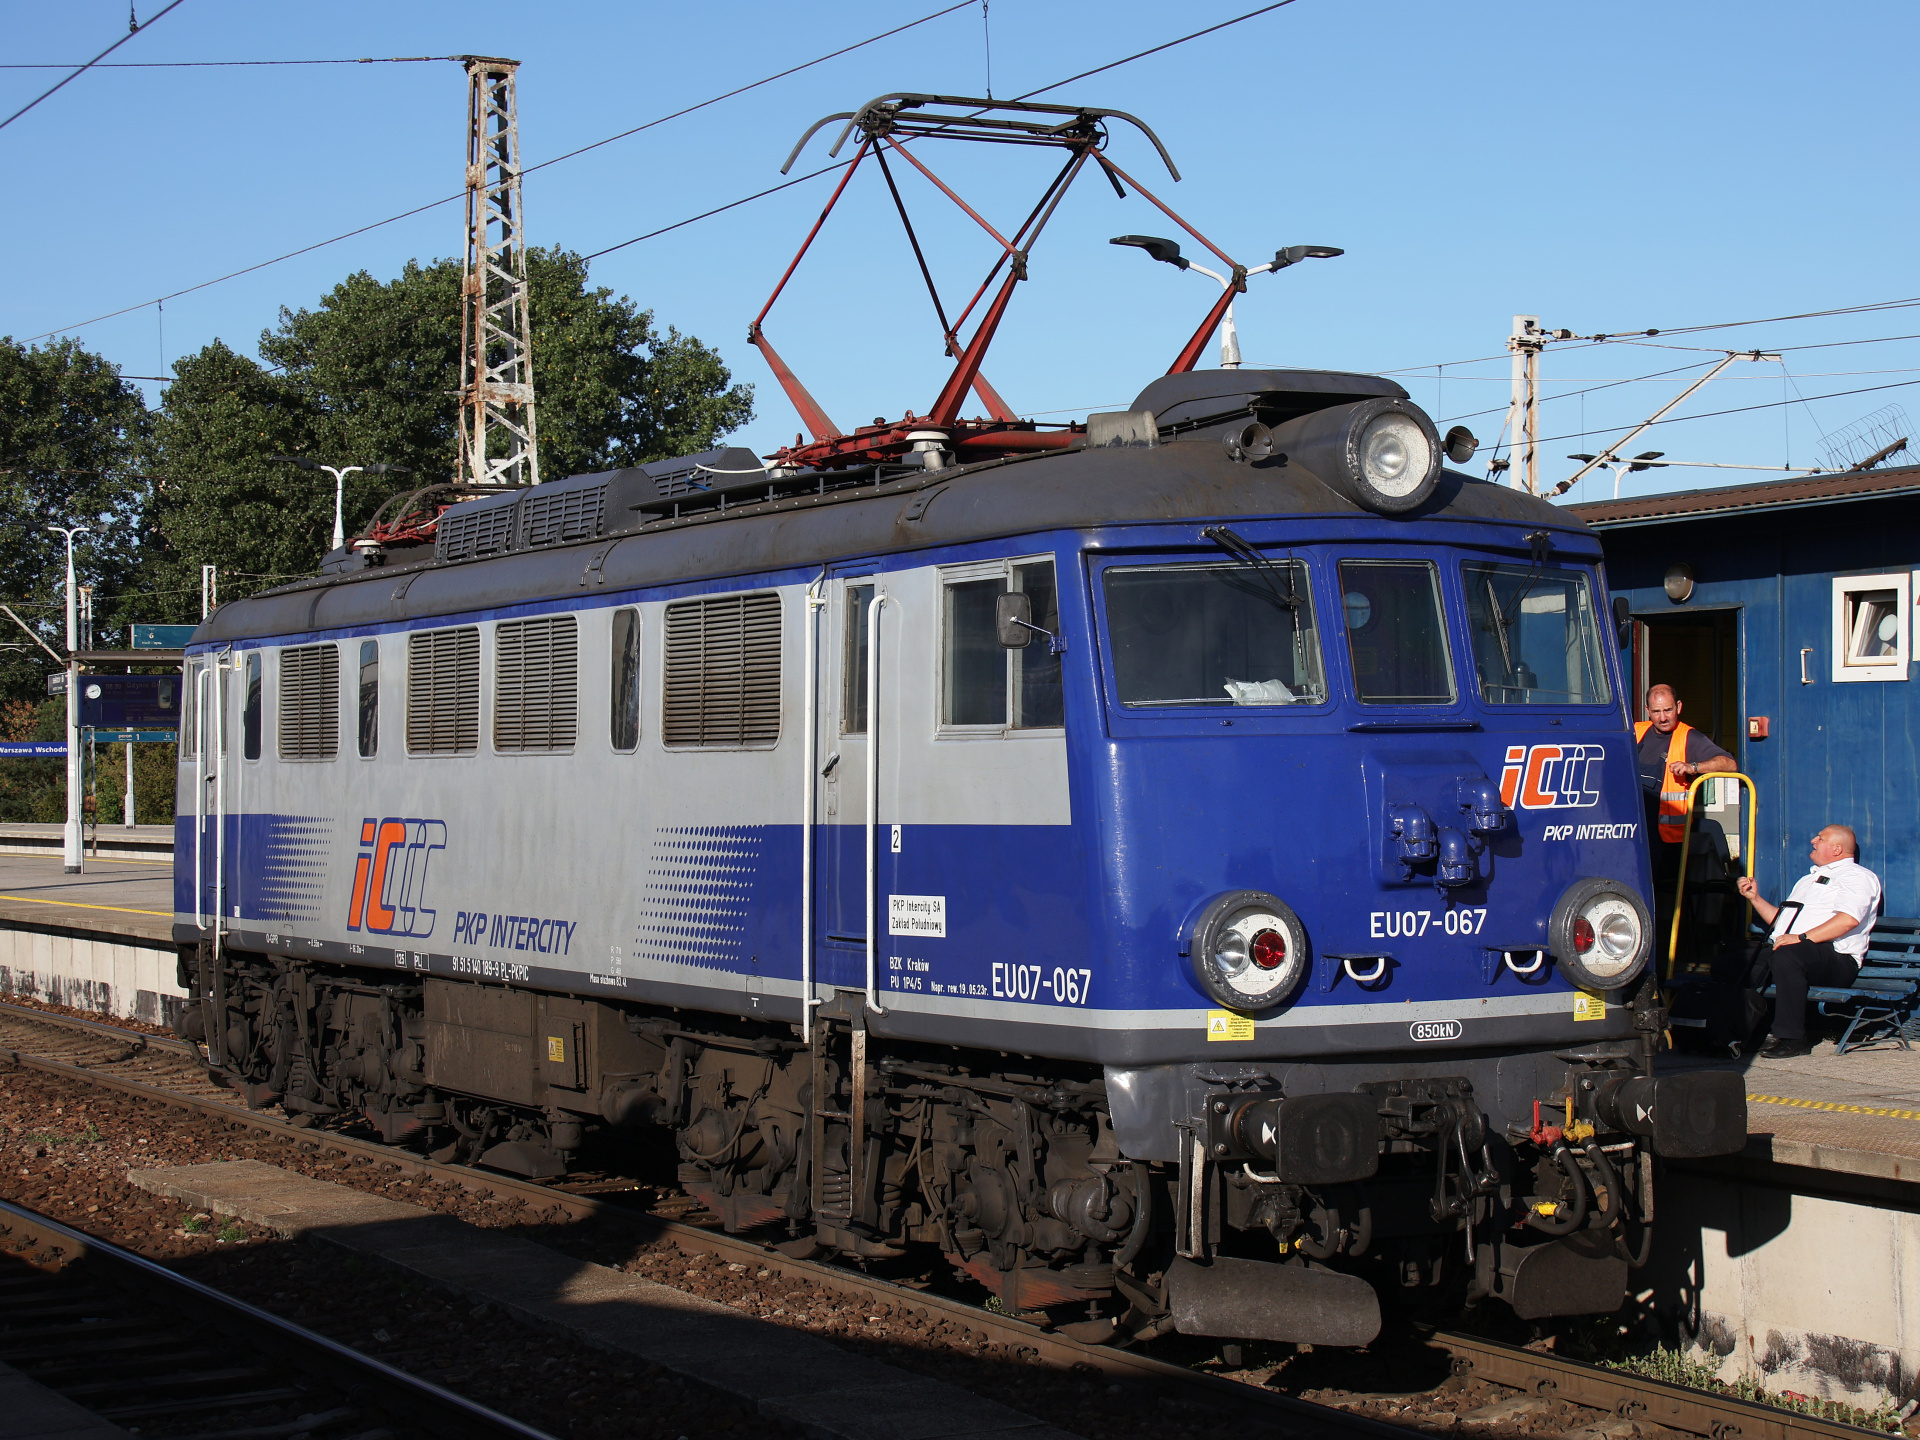 EU07-067 (Pojazdy » Pociągi i lokomotywy » Pafawag 4E)